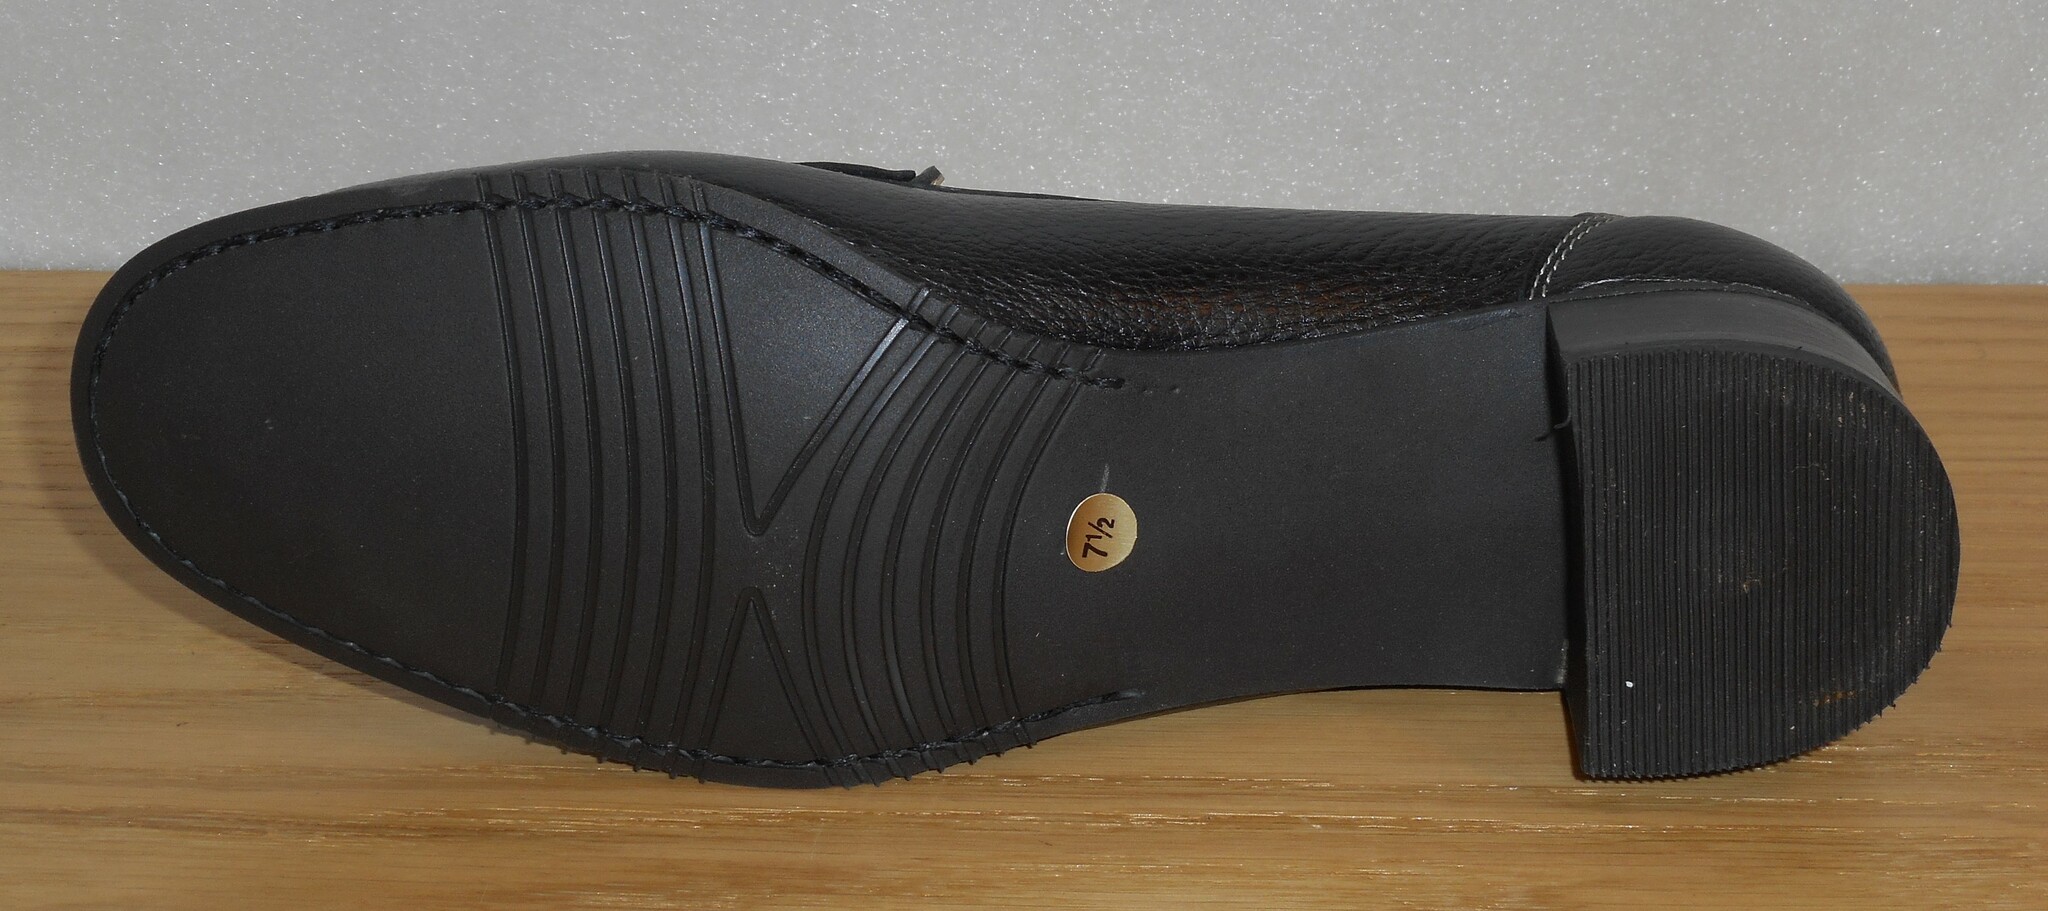 Svart loafer med silverbetsel och naturfärgade dekorsömmar - Amberone